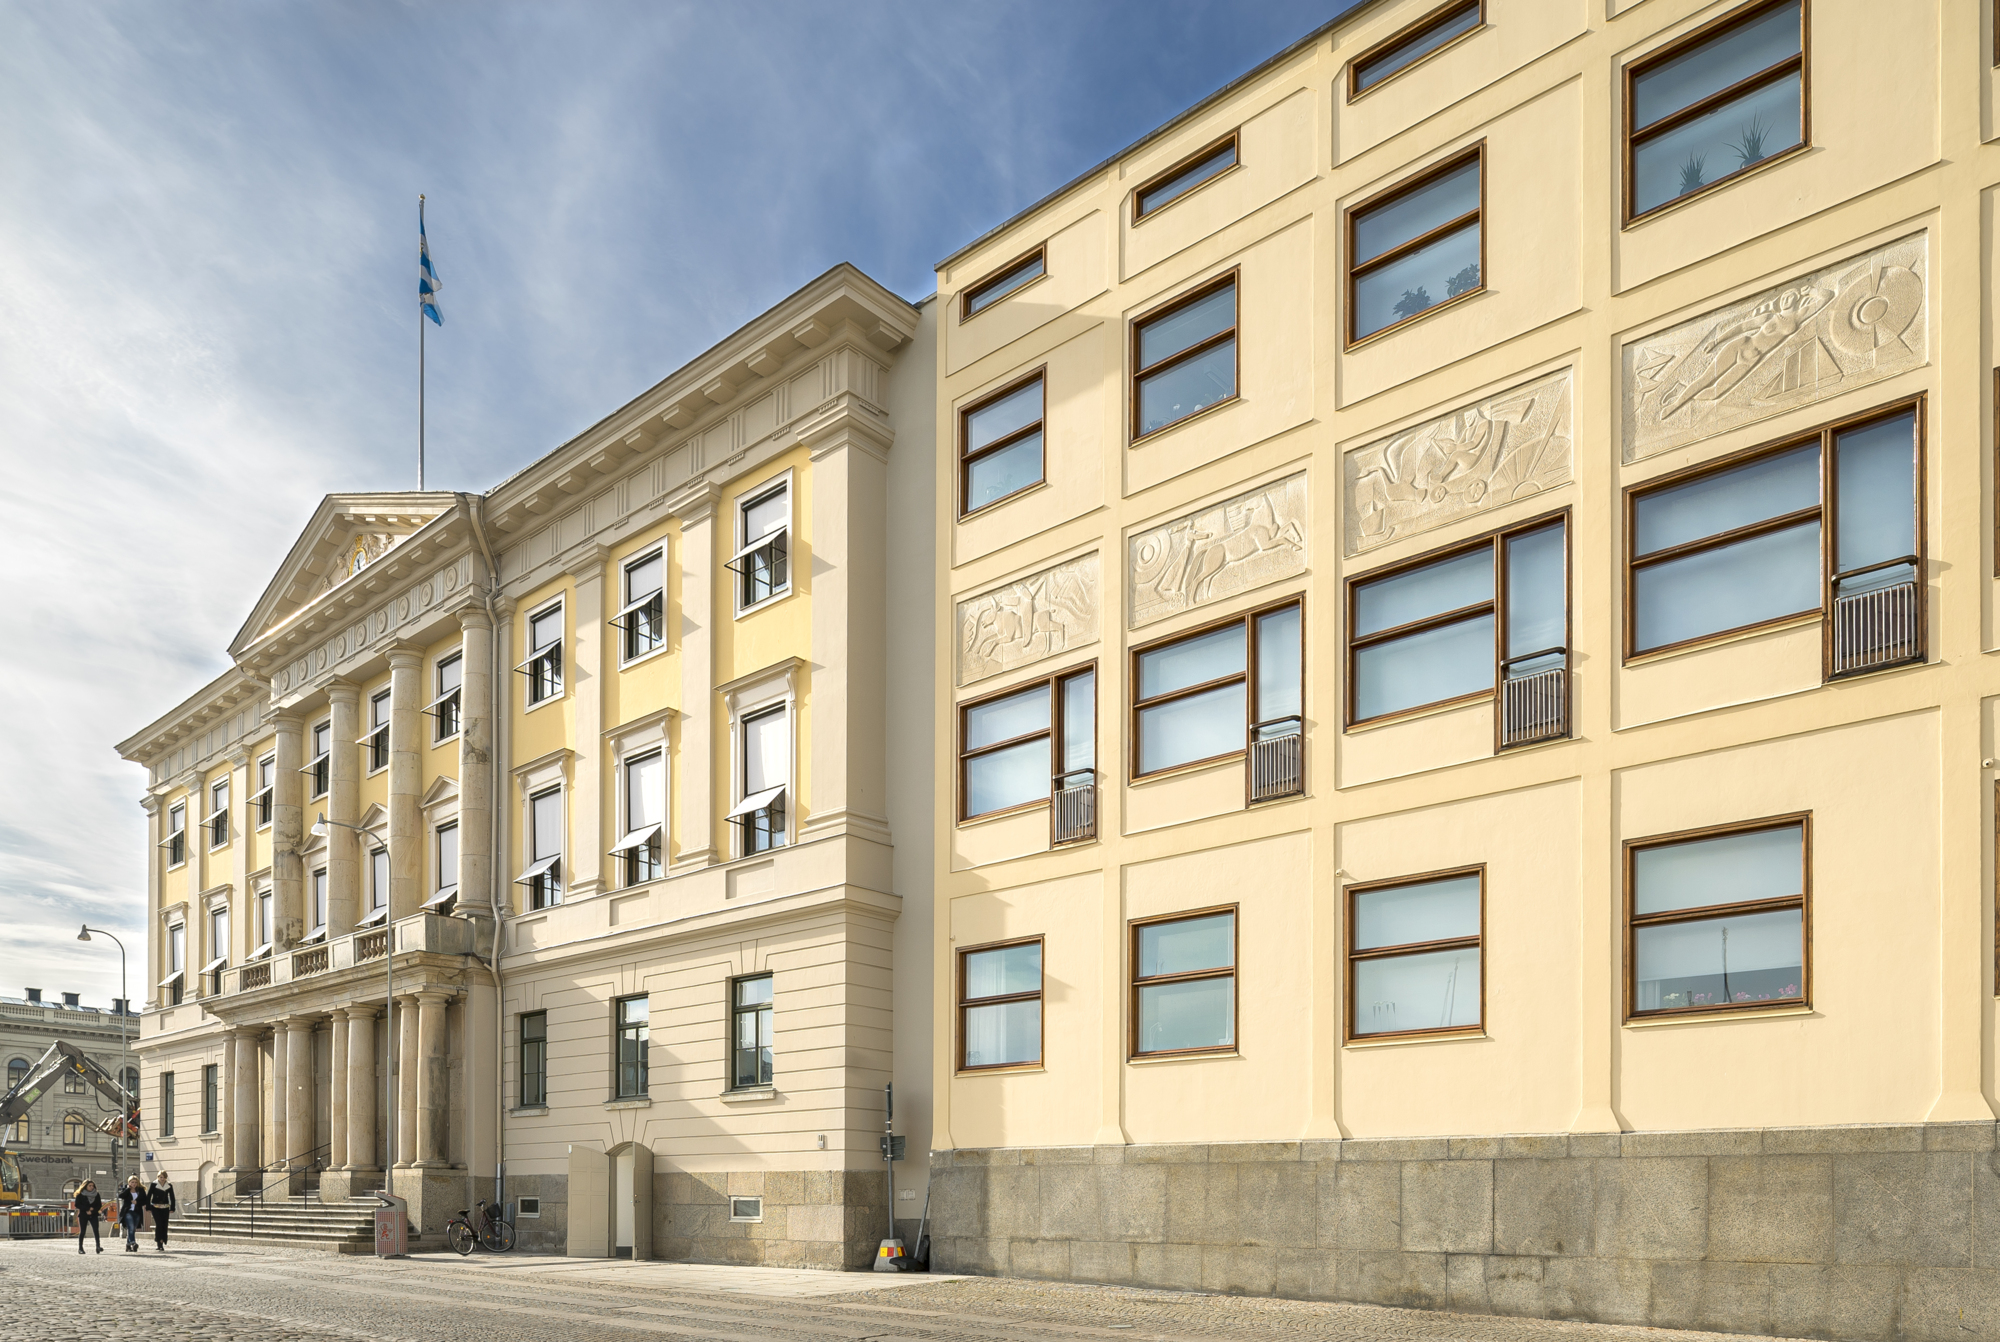 Göteborgs rådhus